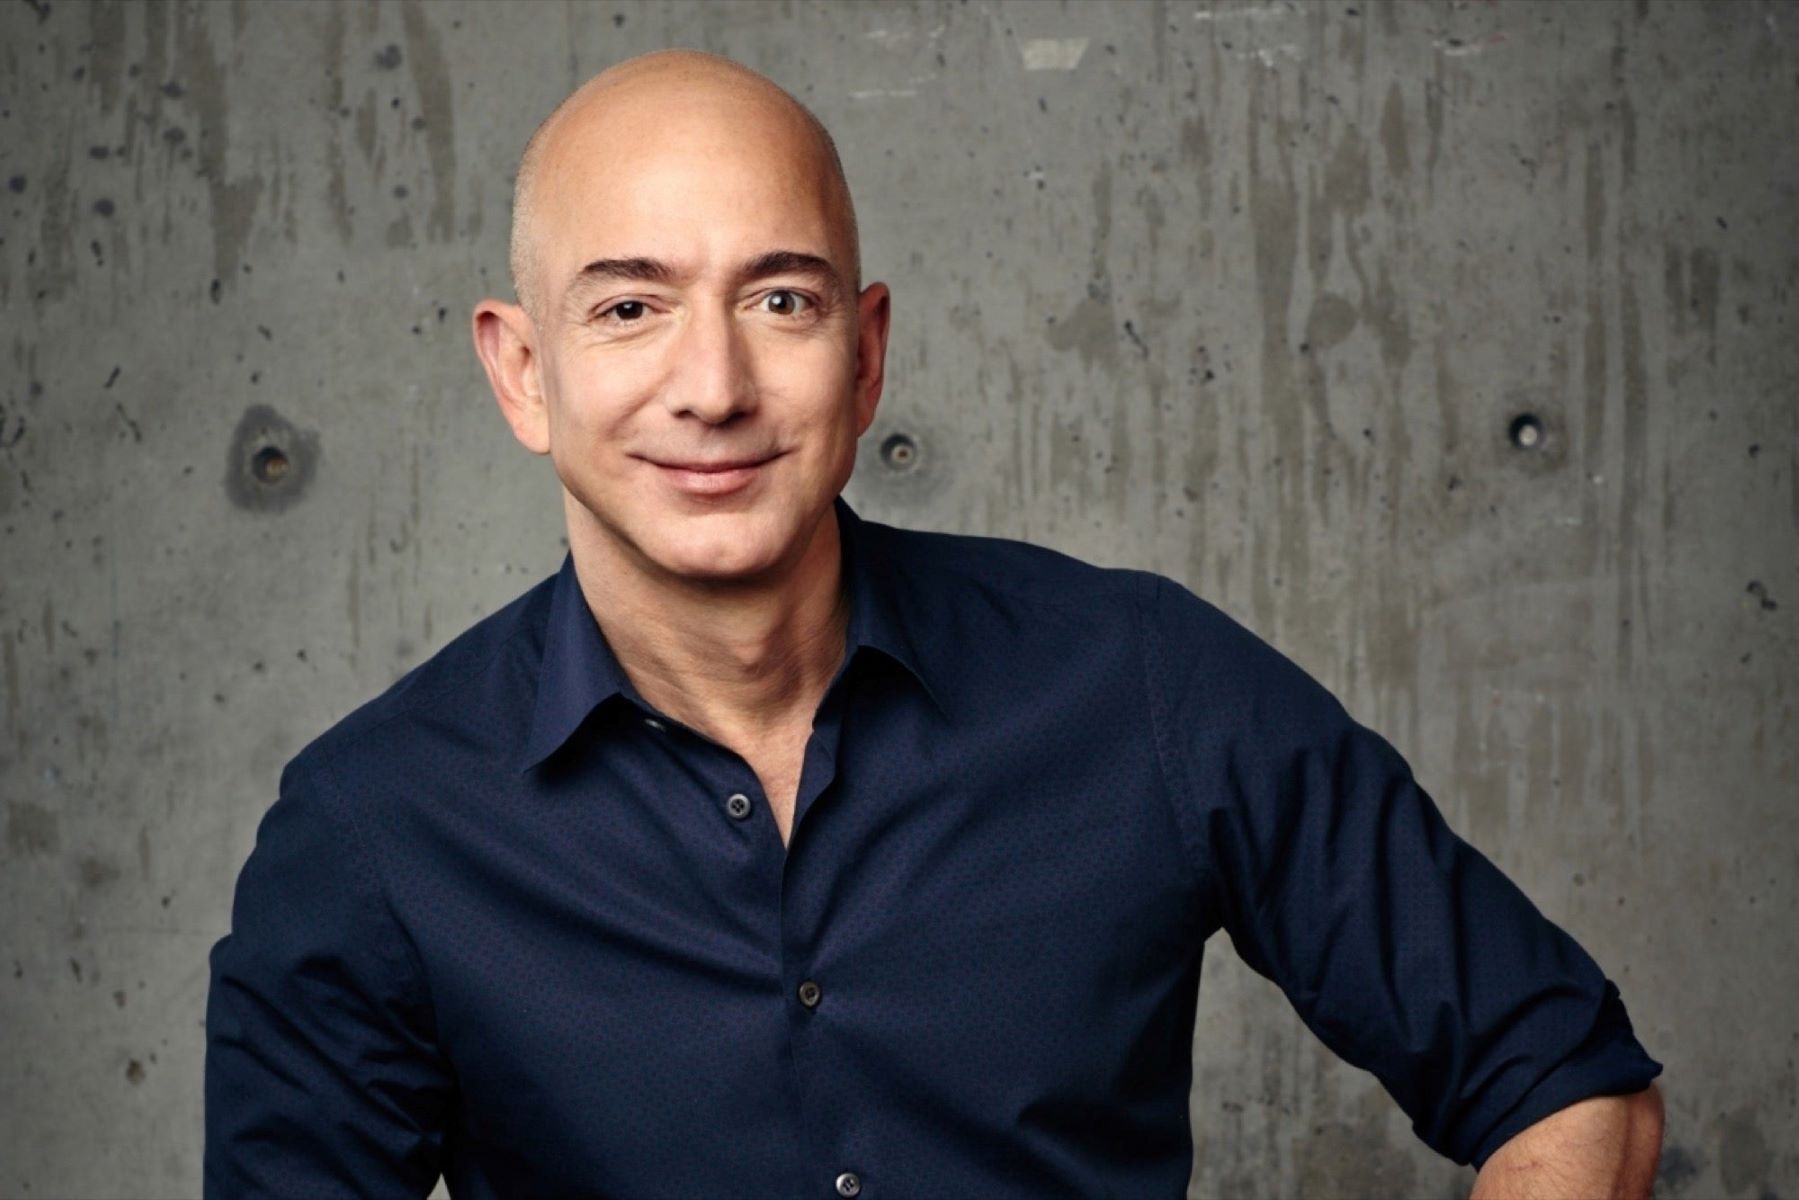 Shocking Revelation: Jeff Bezos’ Jewish Heritage Exposed!